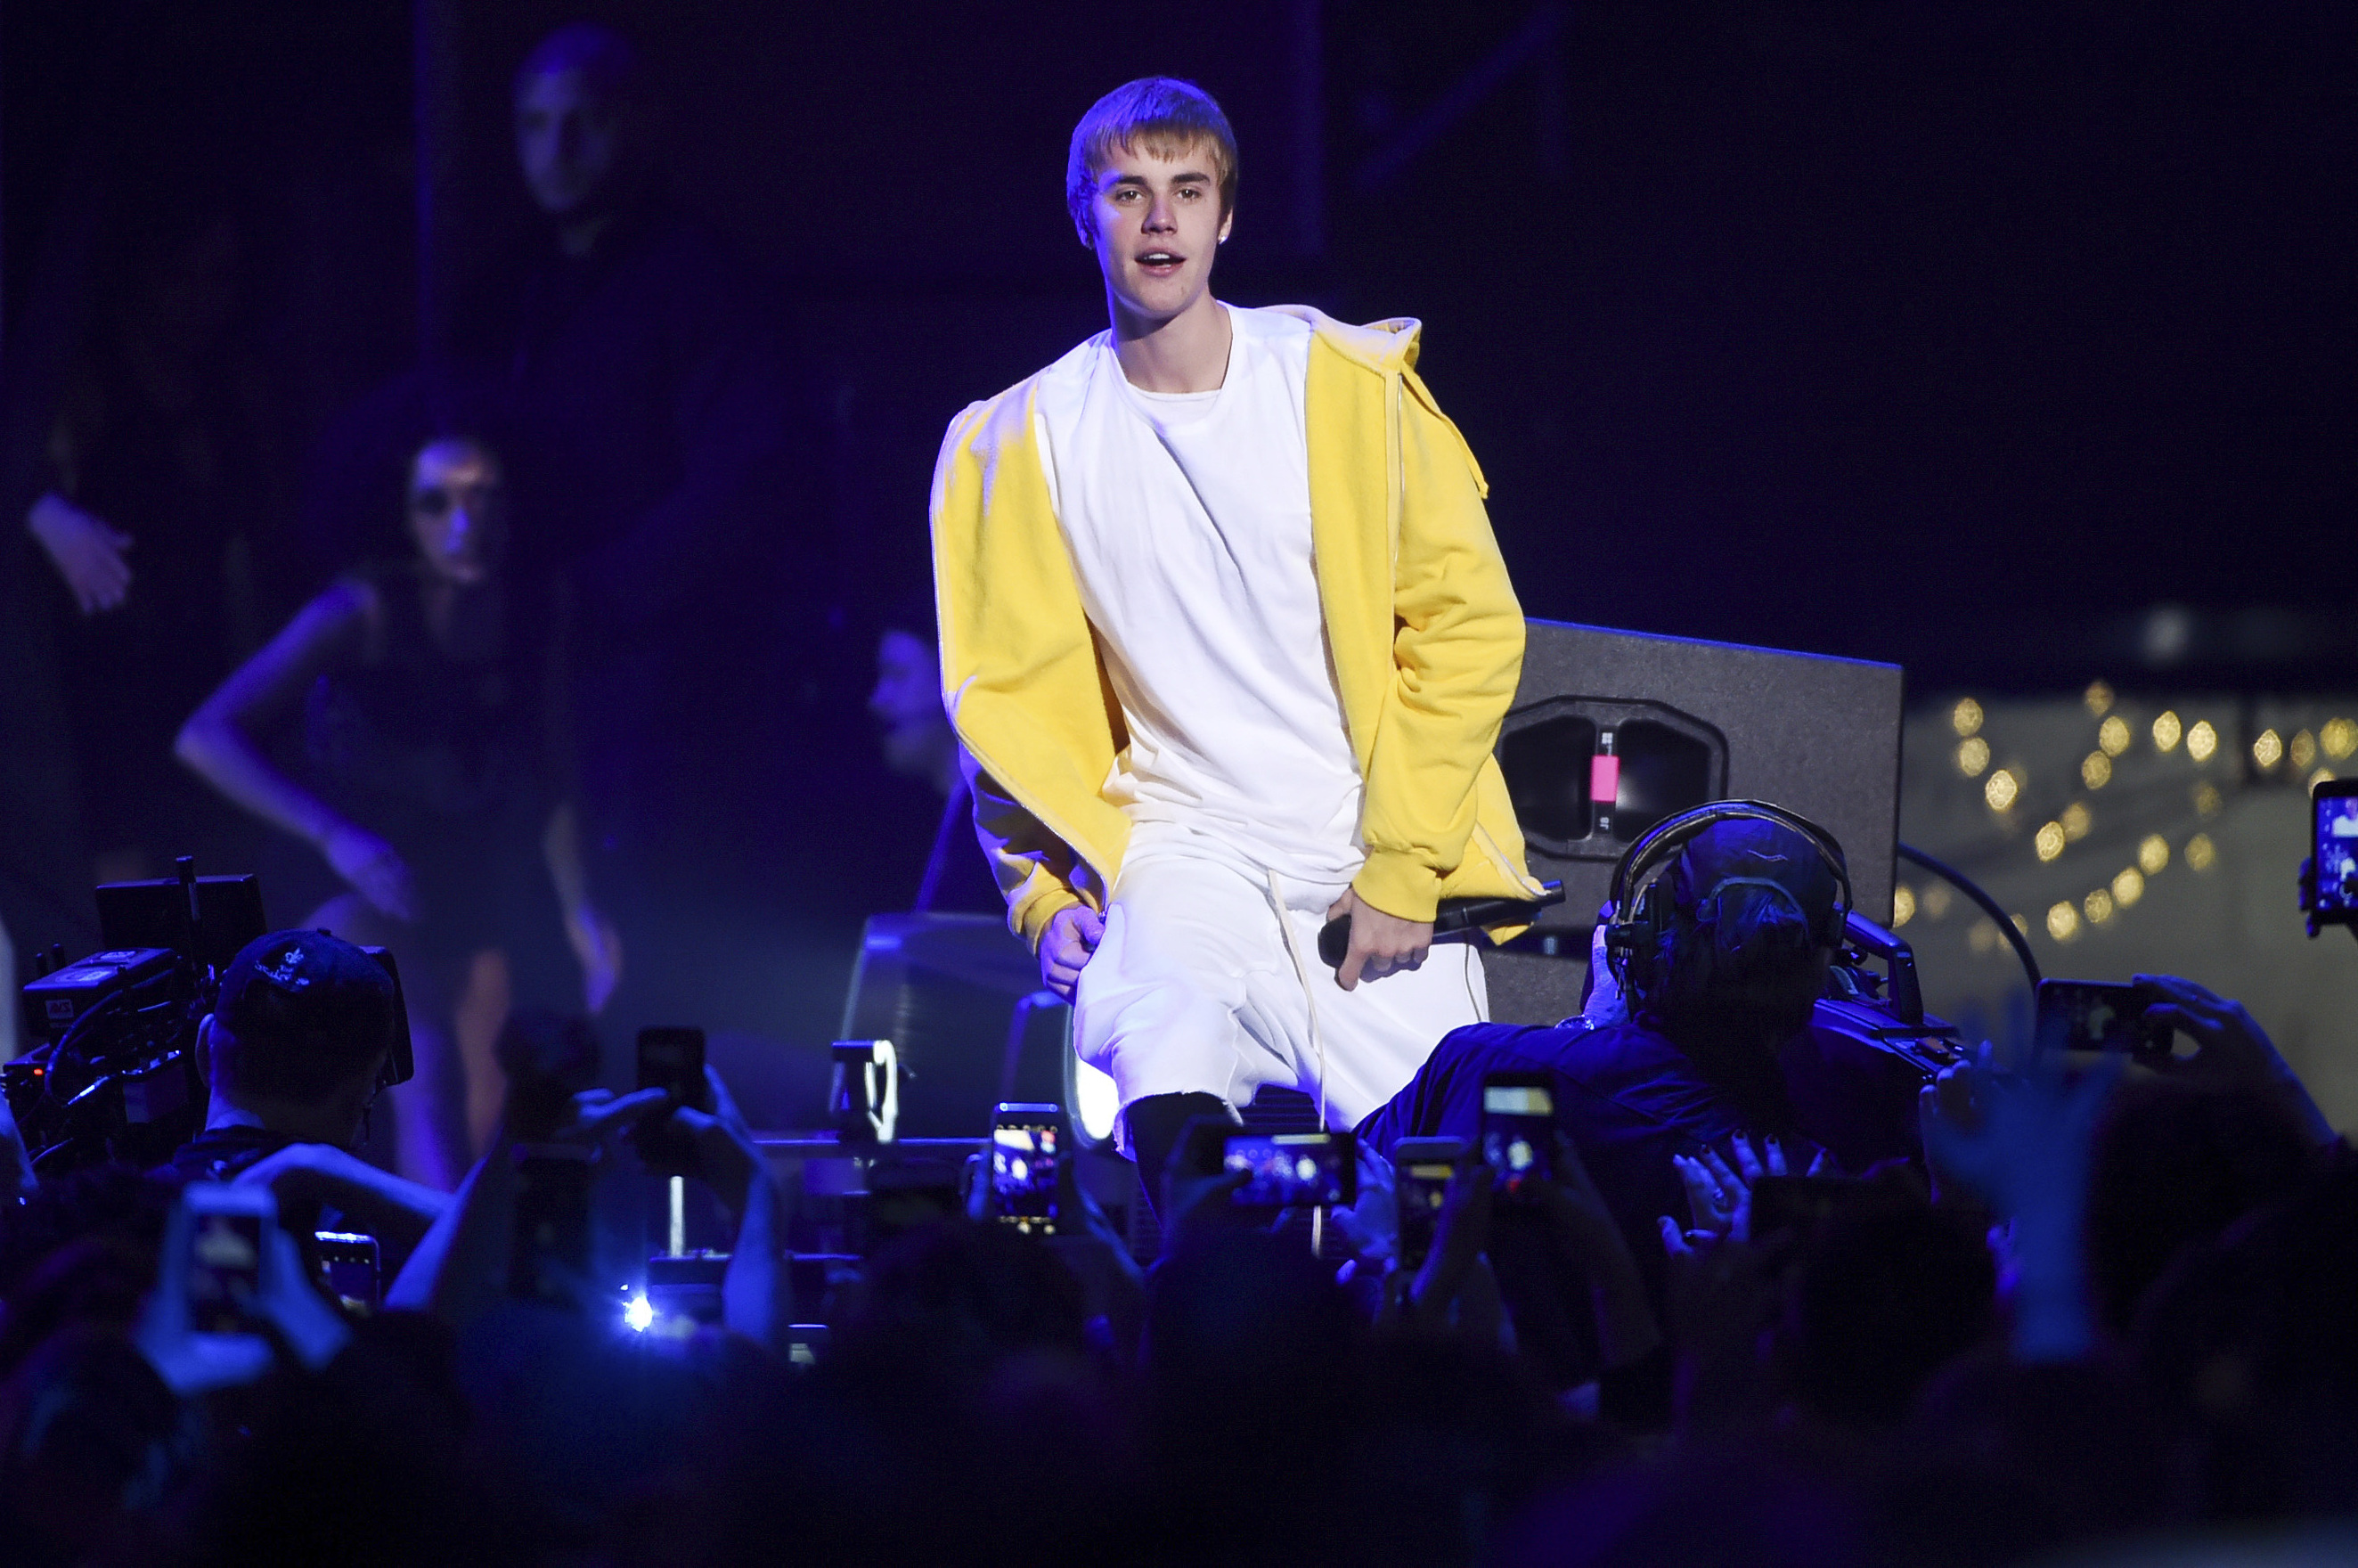 Leaf fan Justin Bieber defends wearing Penguins jersey